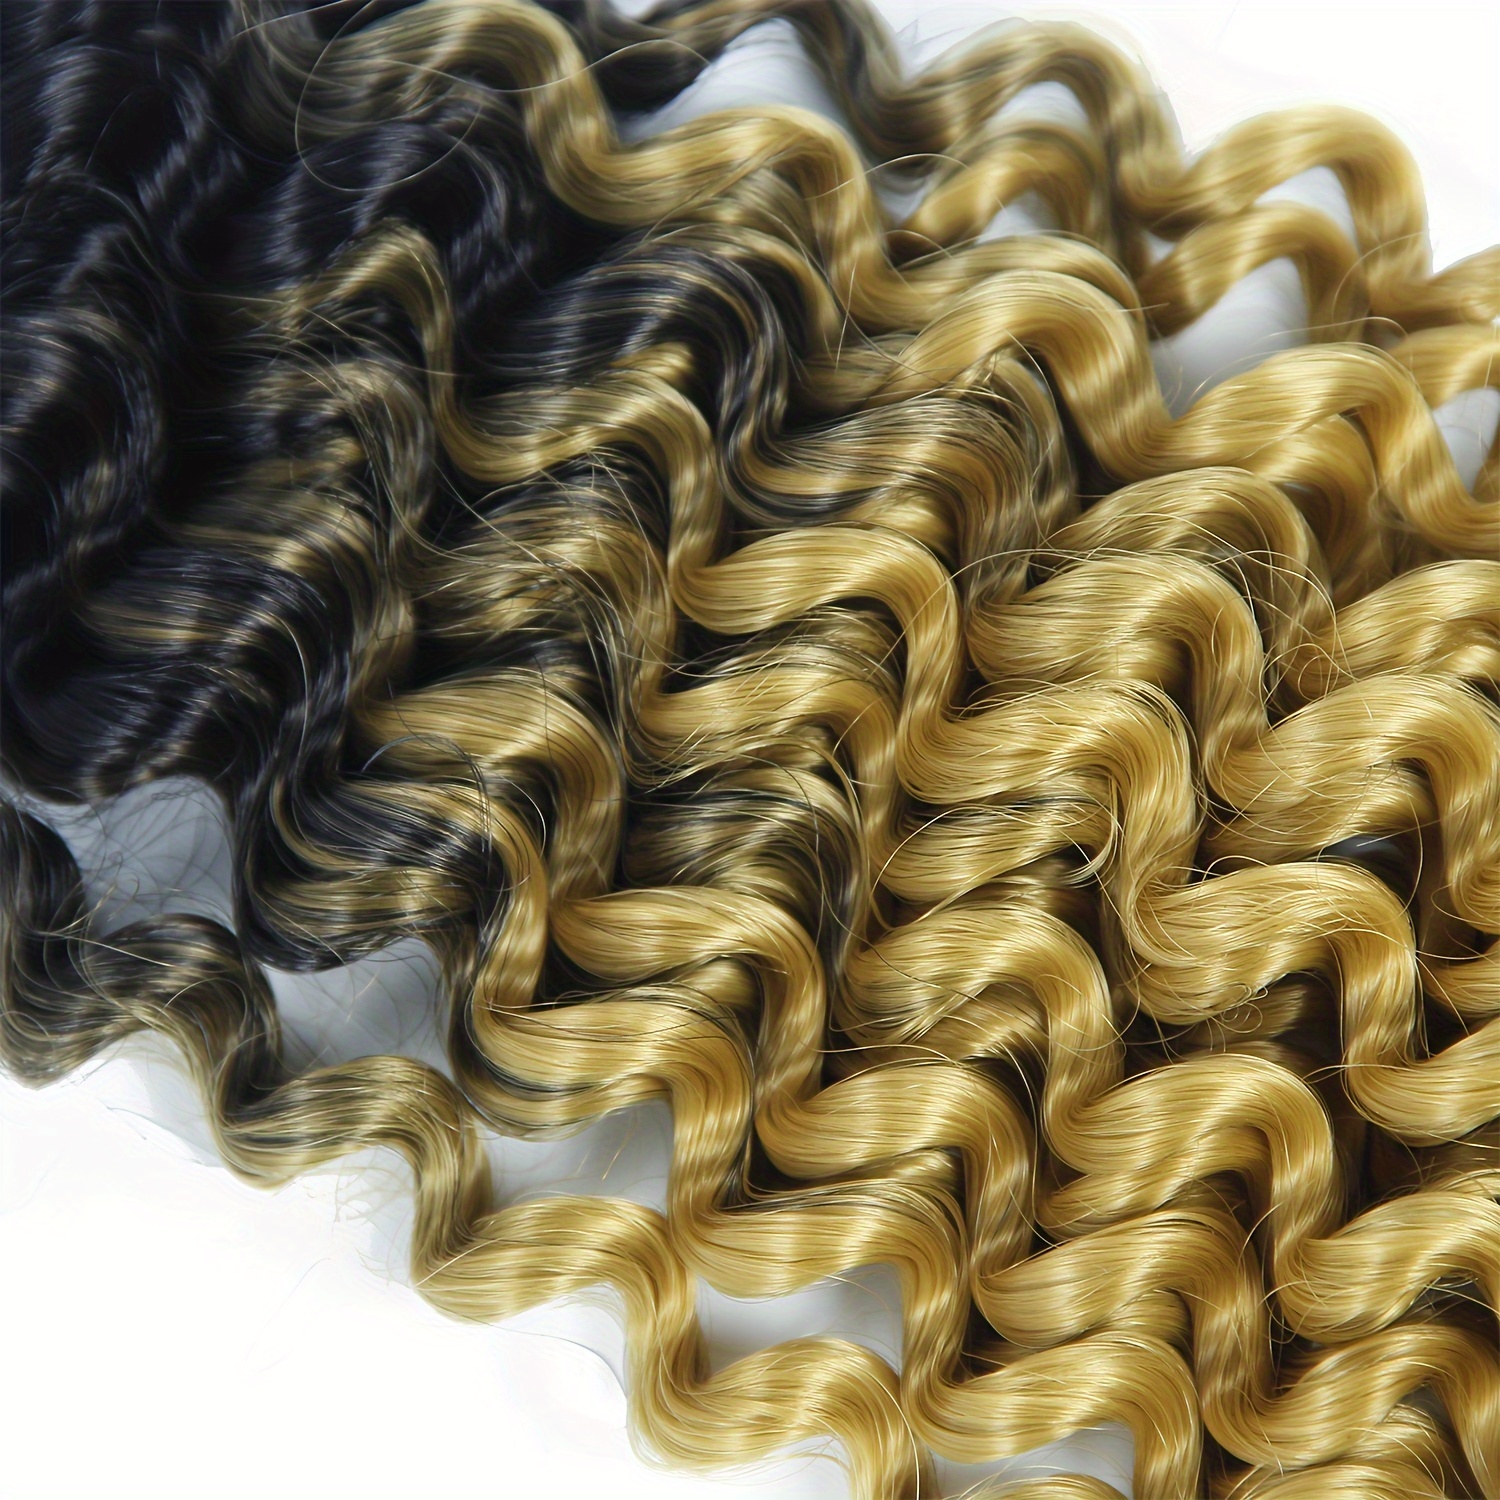 8-14 Marley Bob Deep Water Wave Crochet Braids Hair Extensions